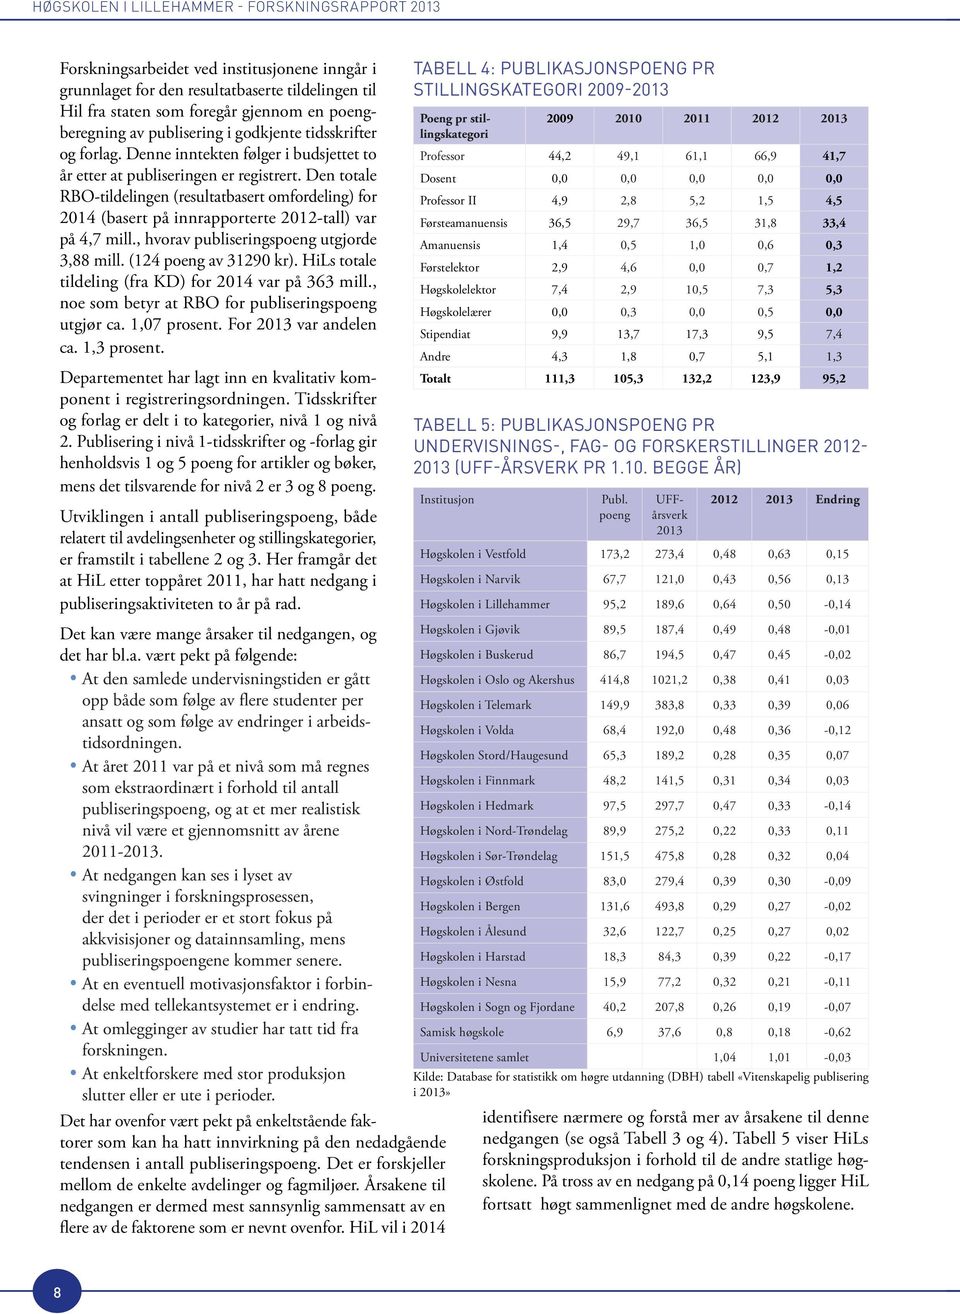 Den totale RBO-tildelingen (resultatbasert omfordeling) for 2014 (basert på innrapporterte 2012-tall) var på 4,7 mill., hvorav publiseringspoeng utgjorde 3,88 mill. (124 poeng av 31290 kr).